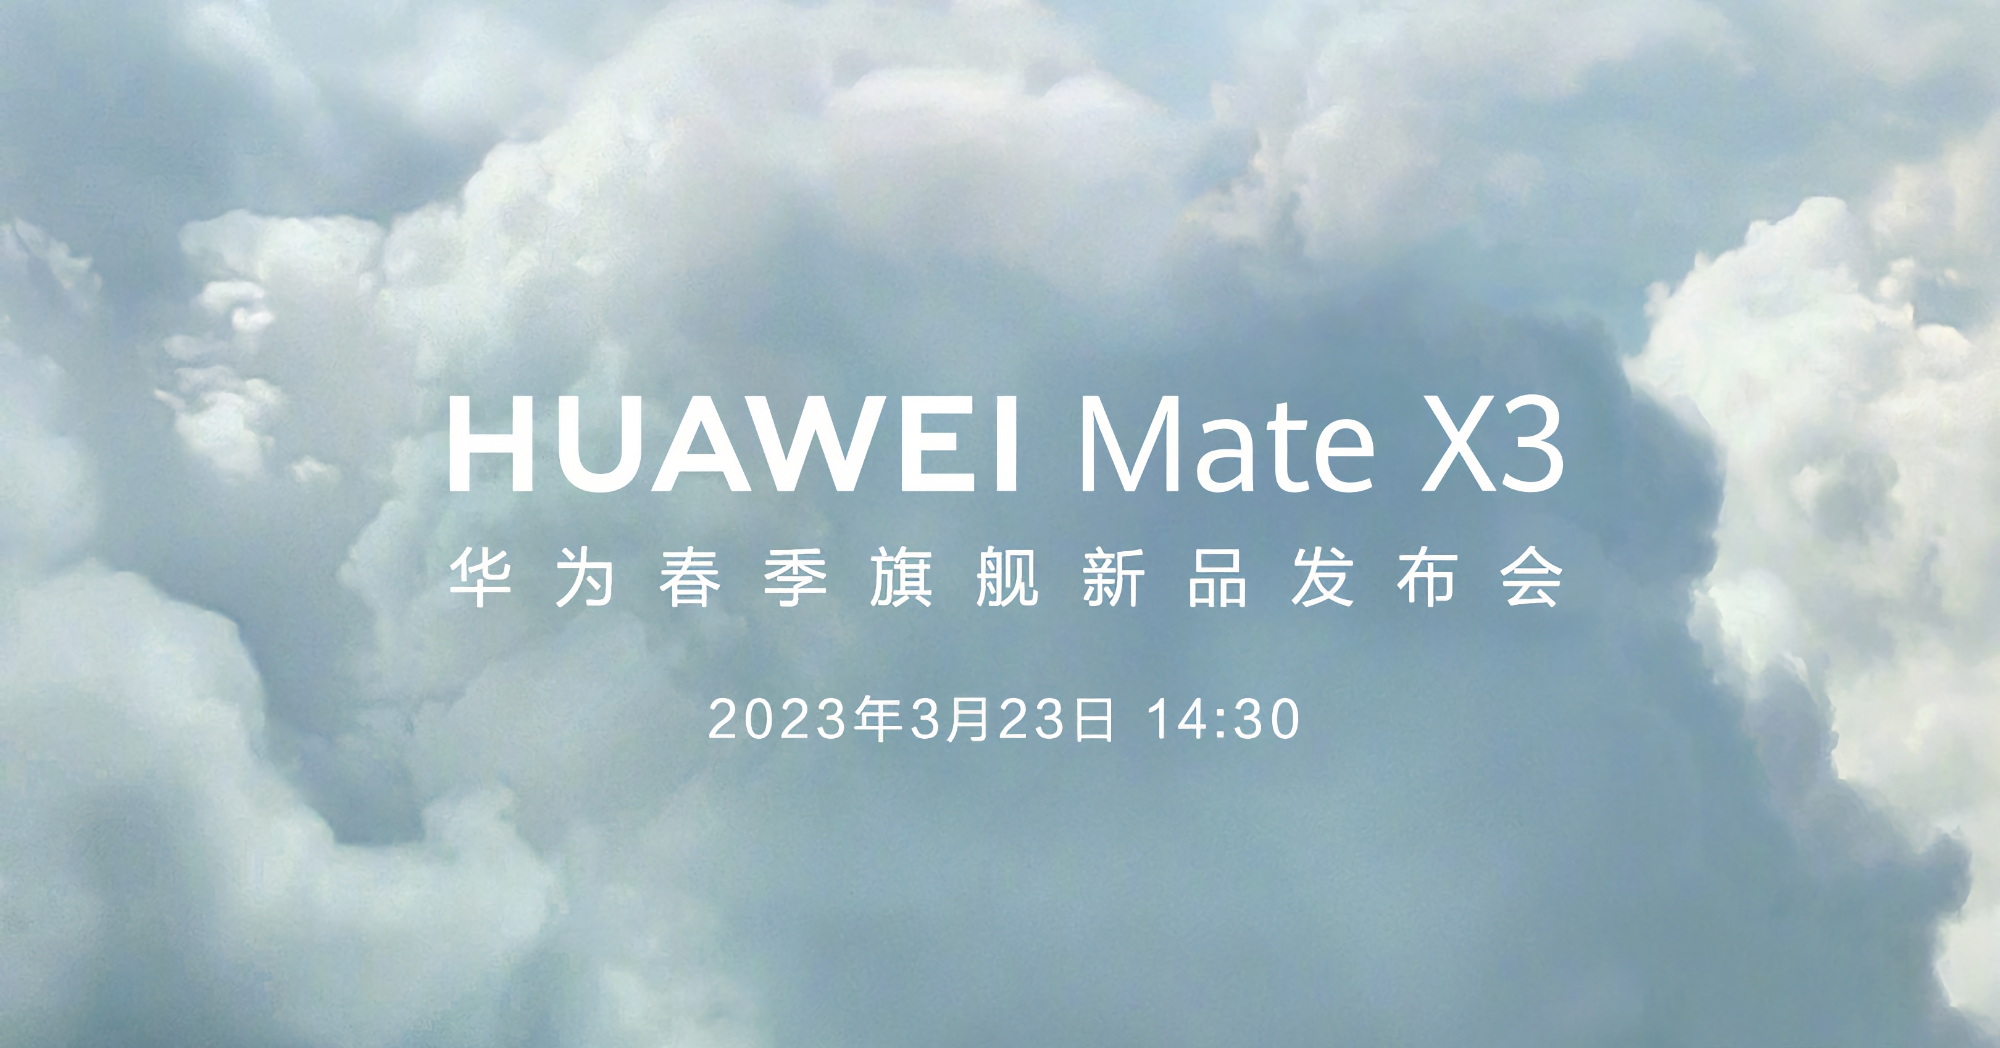 Confirmé : Le smartphone pliable Huawei Mate X3 sera présenté le 23 mars.